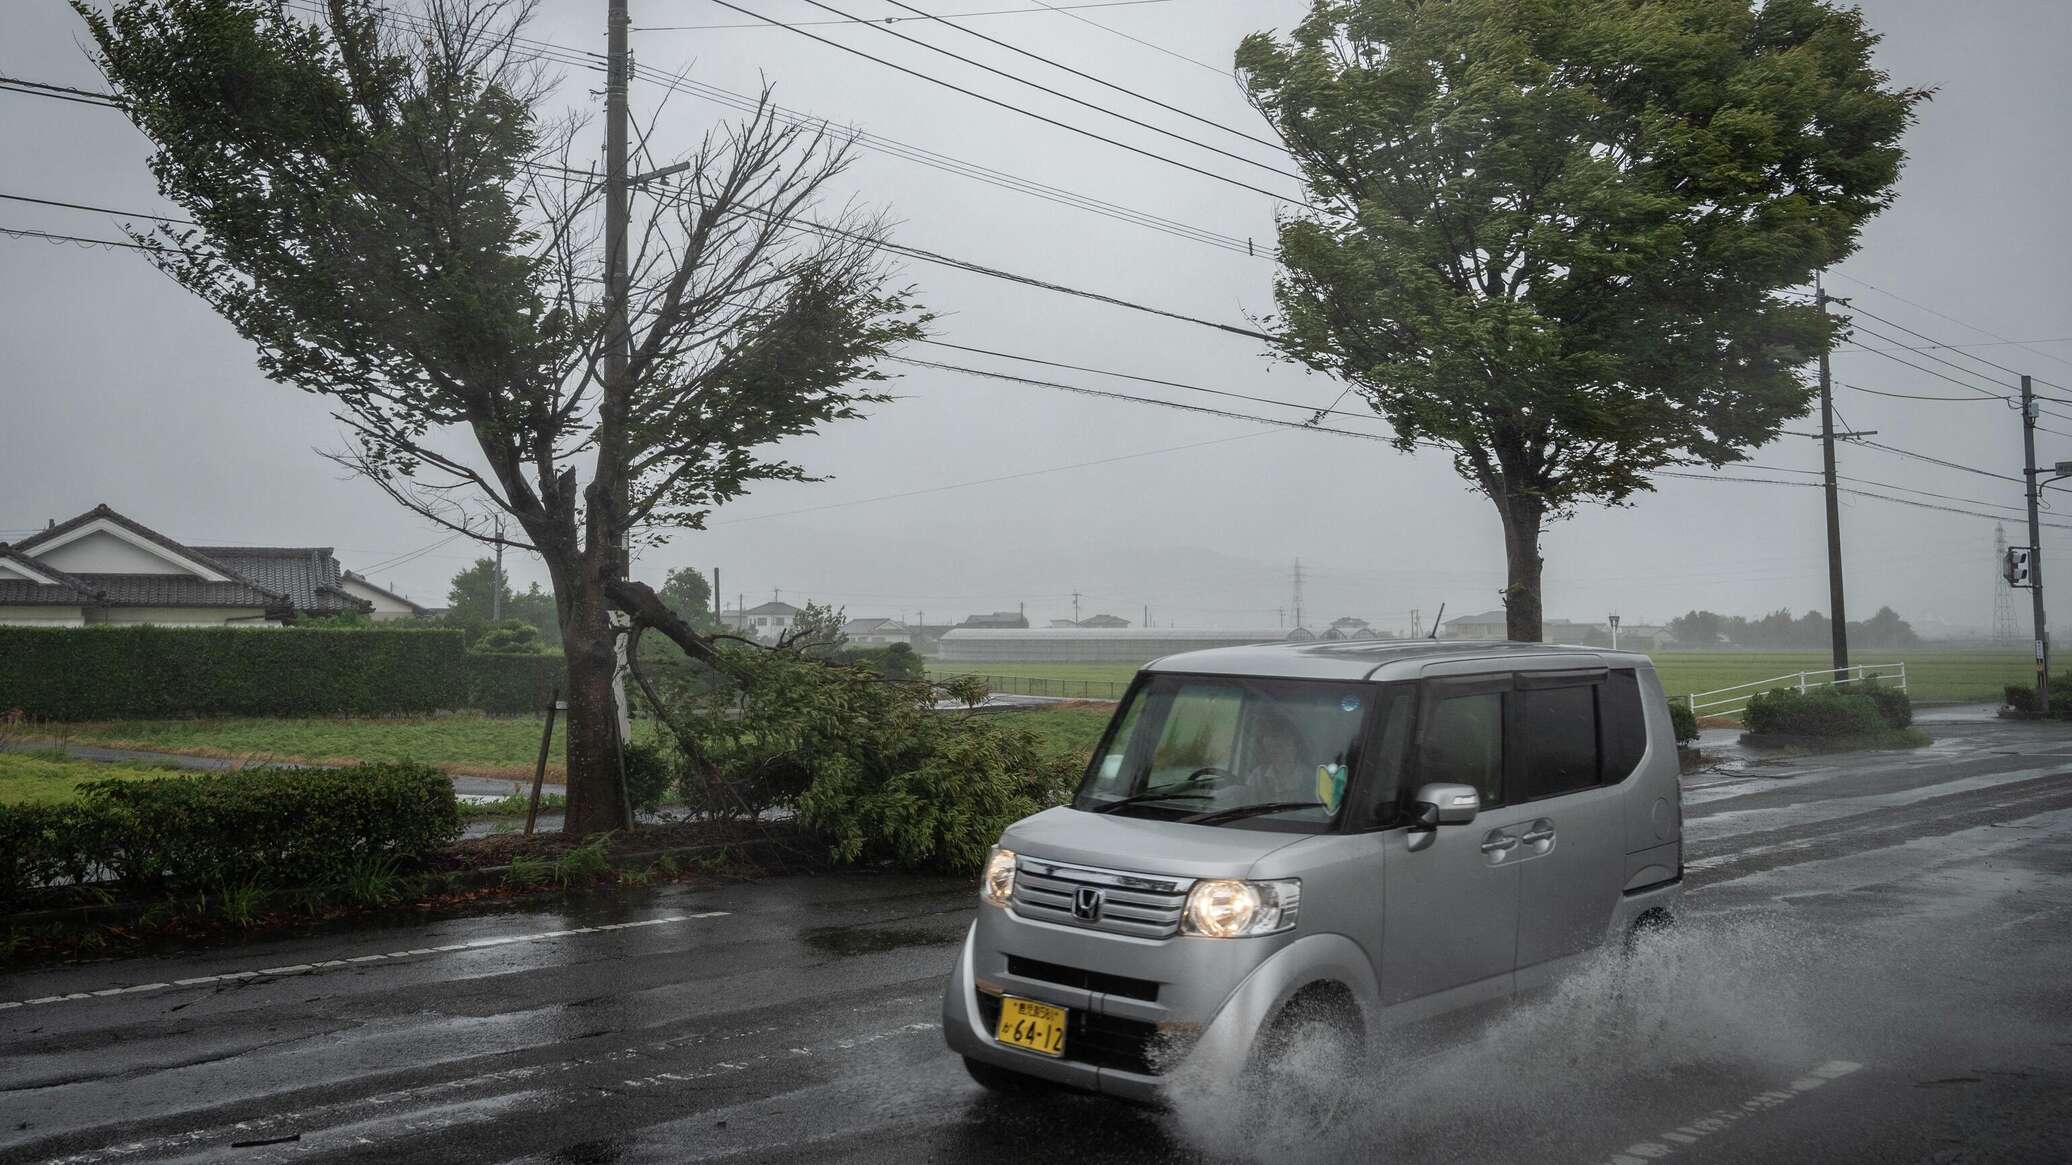 أمر بإجلاء أكثر من 46 ألف من سكان جنوب اليابان بسبب إعصار "ماوار" المدمر